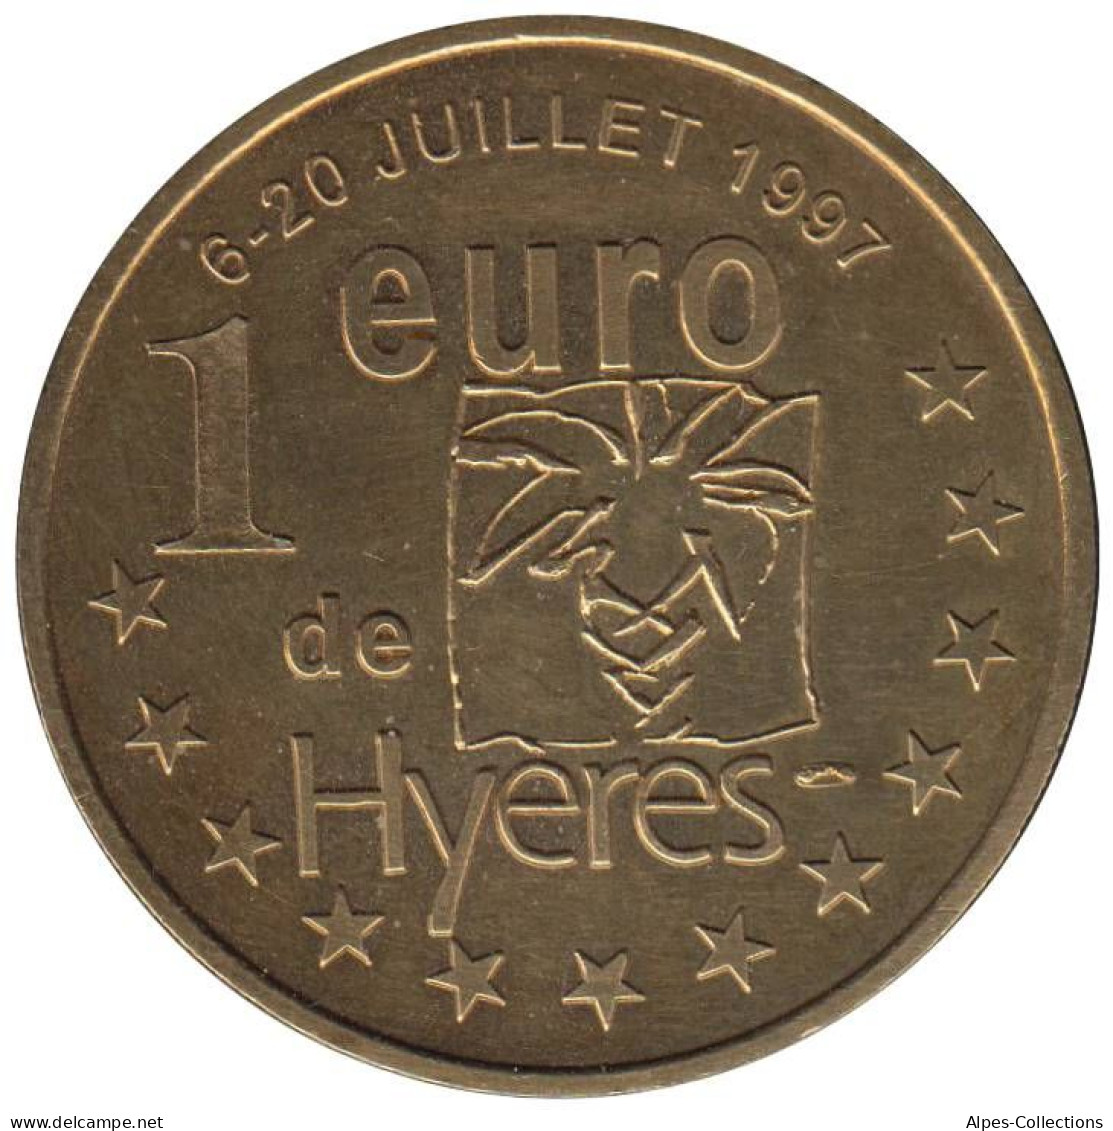 HYERES - EU0010.1 - 1 EURO DES VILLES - Réf: T295 - 1997 - Euros Des Villes